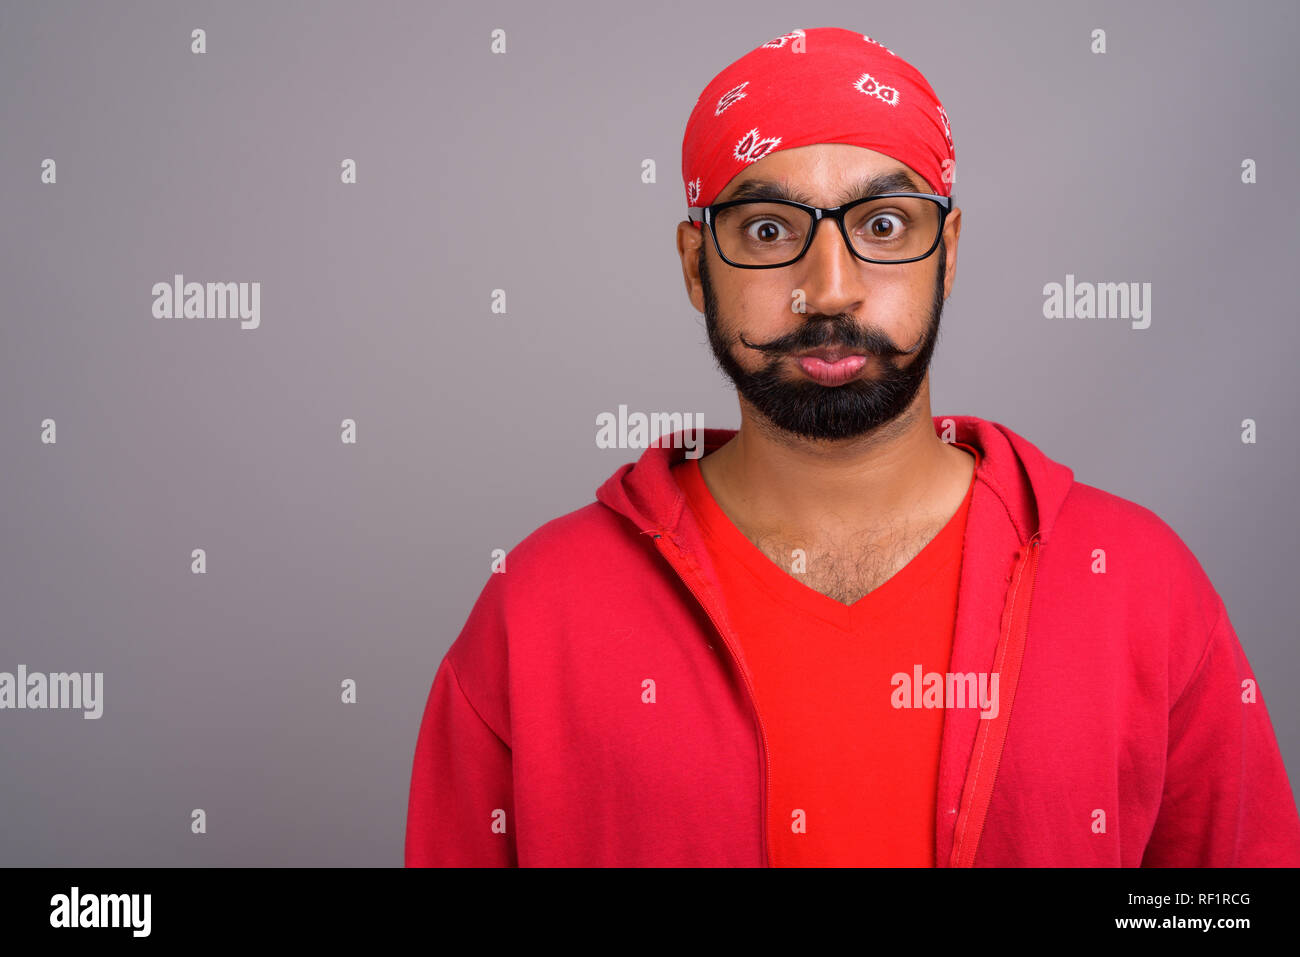 Ennuyer Indian man wearing red shirt et faire drôle de visage Banque D'Images